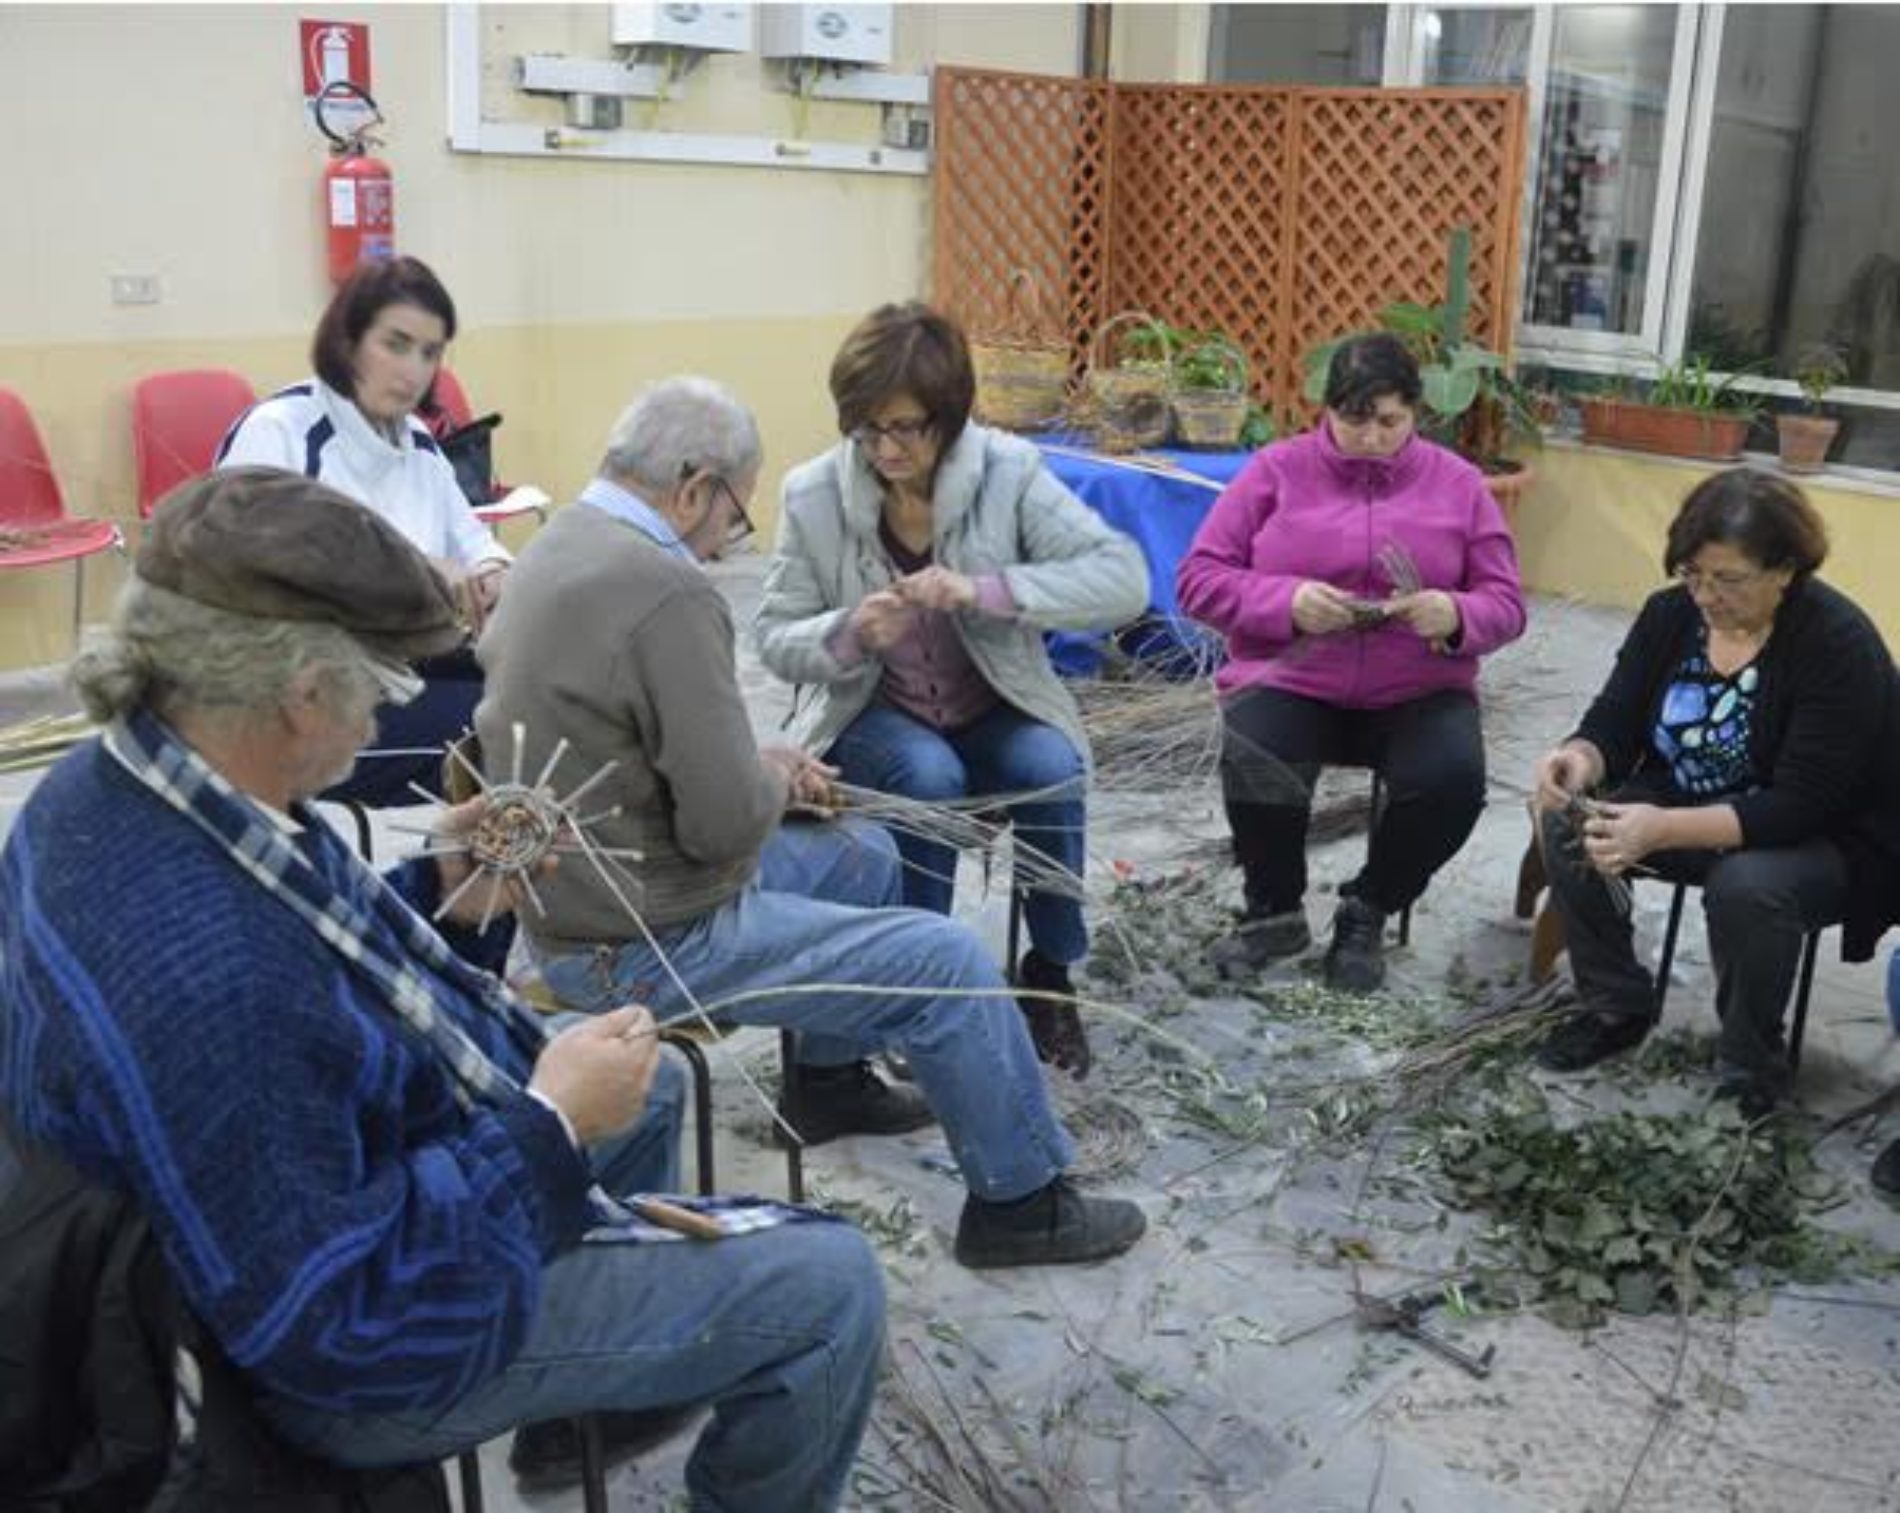 CORSO DI INTRECCIO CREATIVO organizzato dall’Associazione Culturale “LiberArte” di Barrafranca